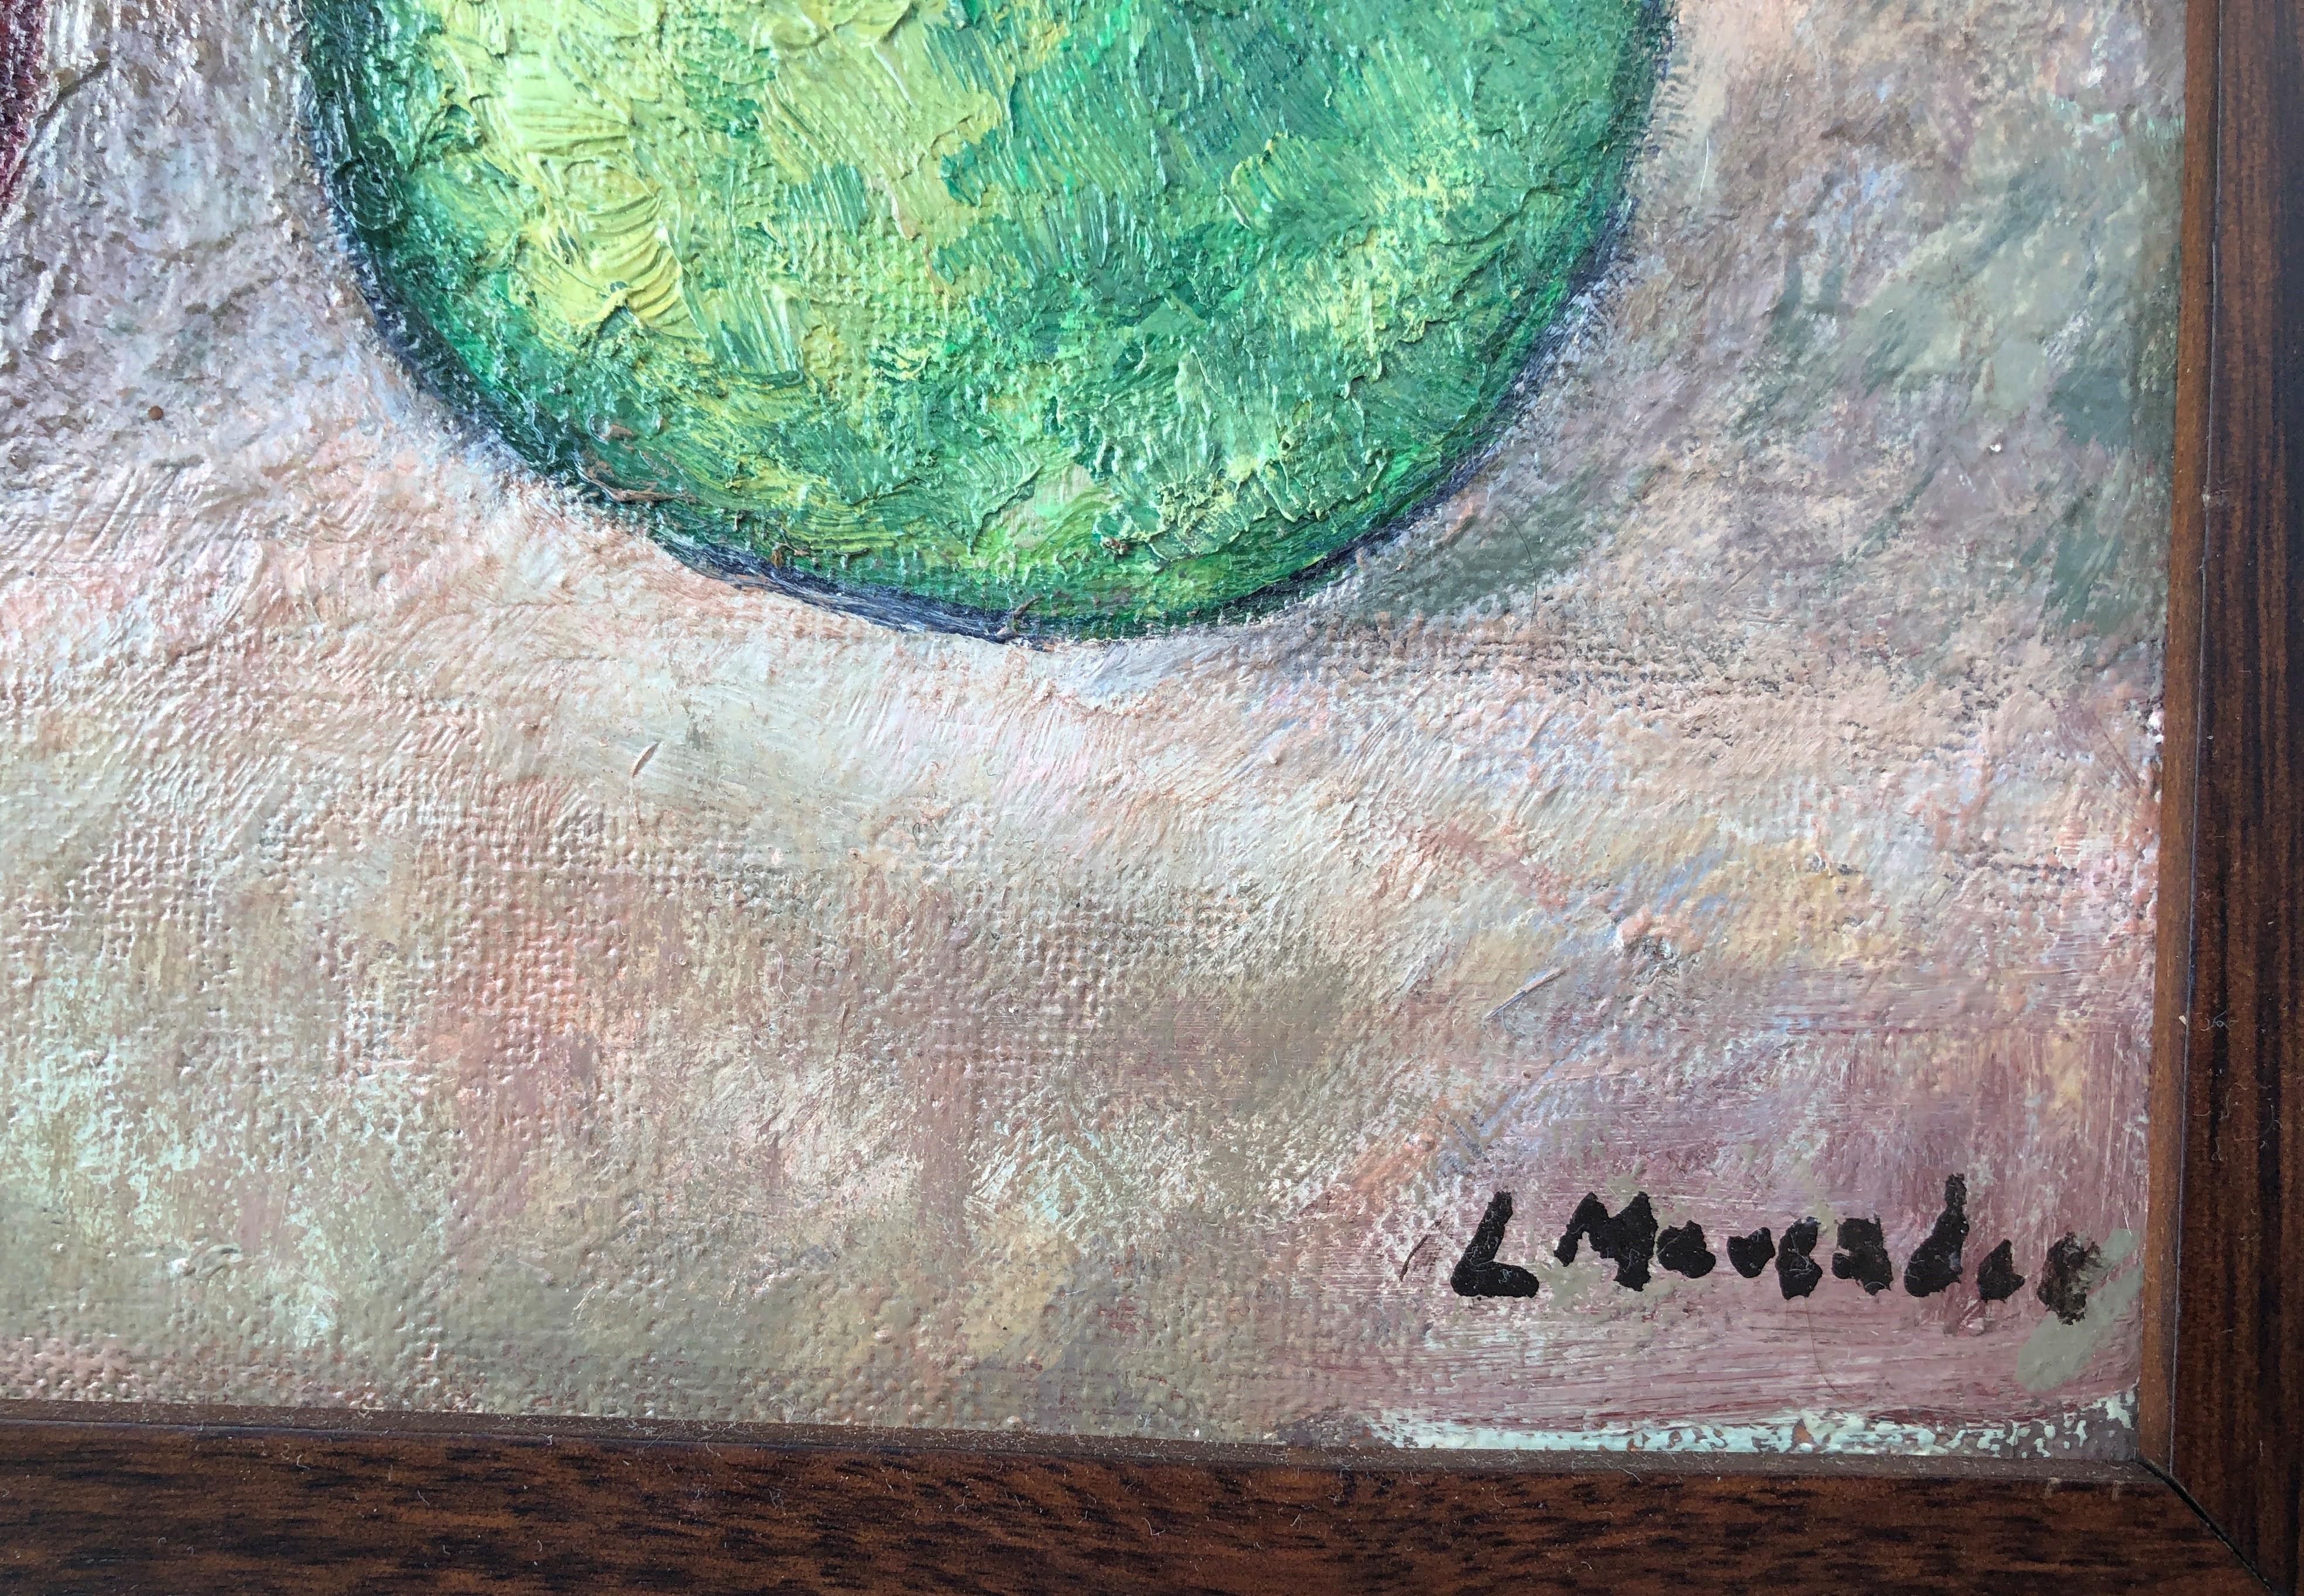 Obststillleben, Original, Öl auf Leinwand (Fauvismus), Painting, von Lluis Mercader